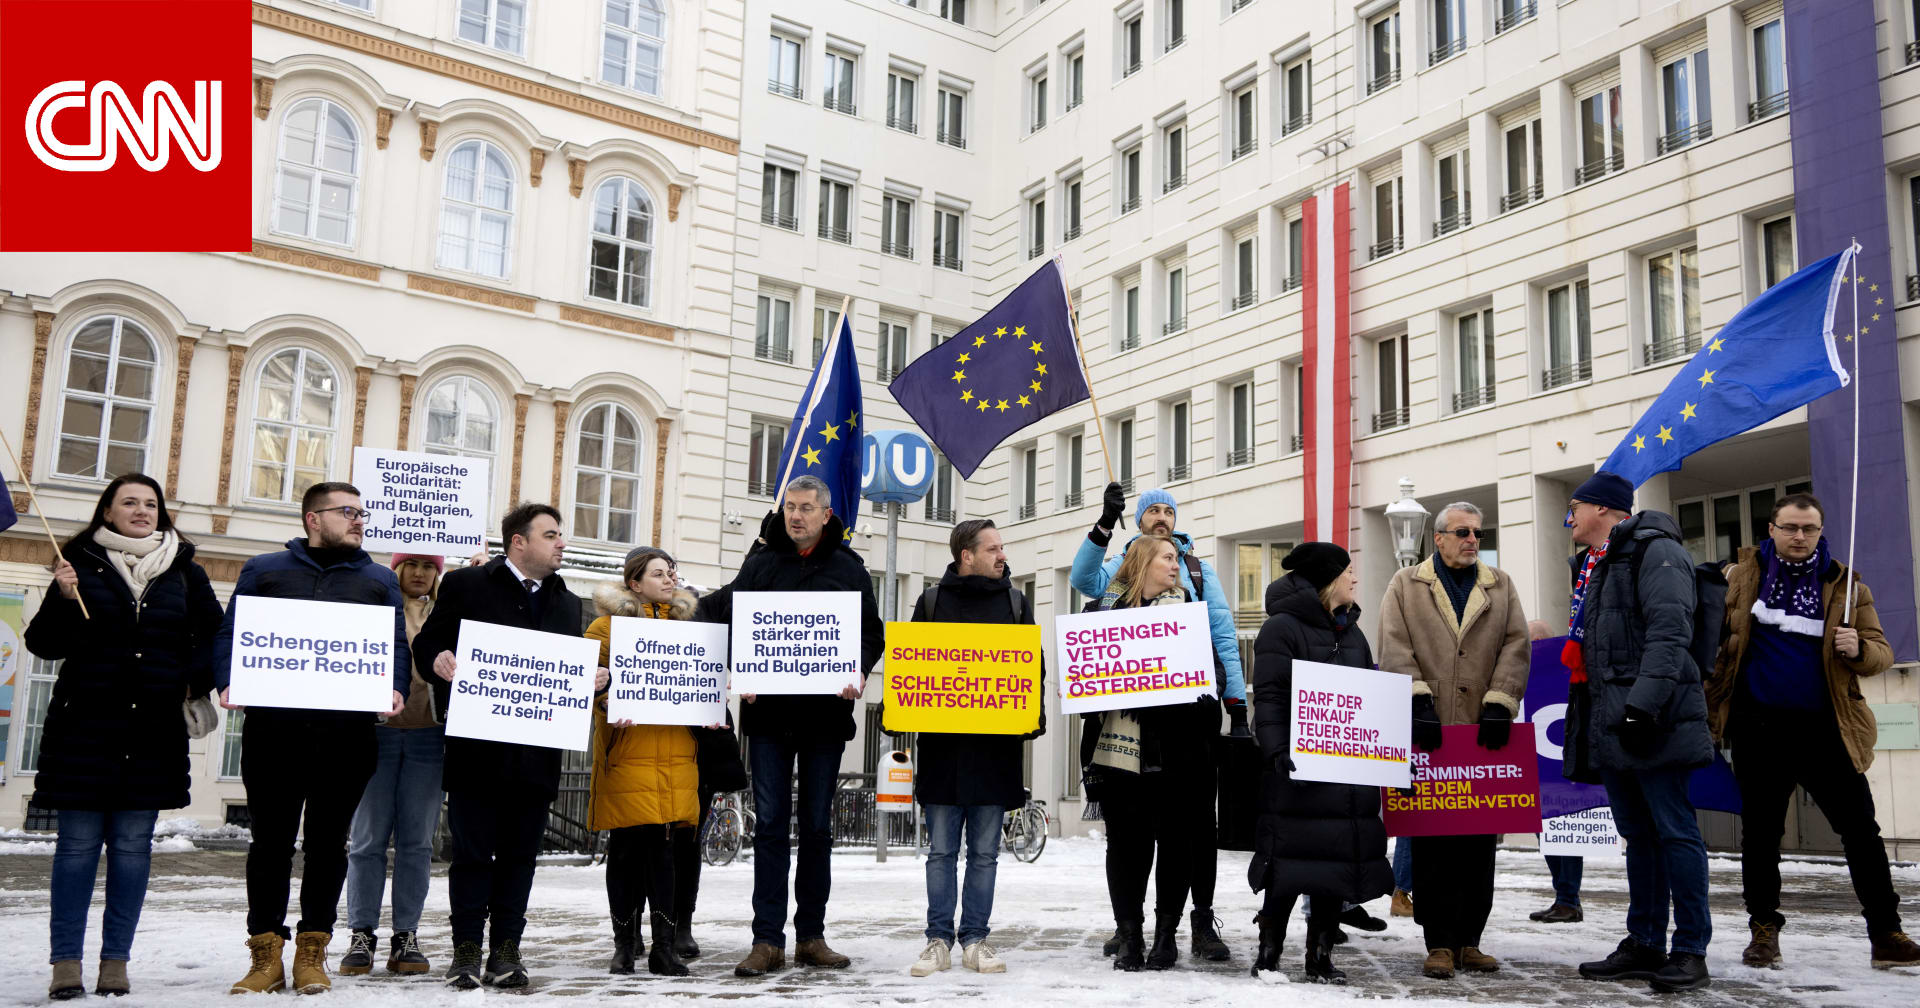 رومانيا وبلغاريا ترحبان بقرار الاتحاد الأوروبي توسيع منطقة الشنغن